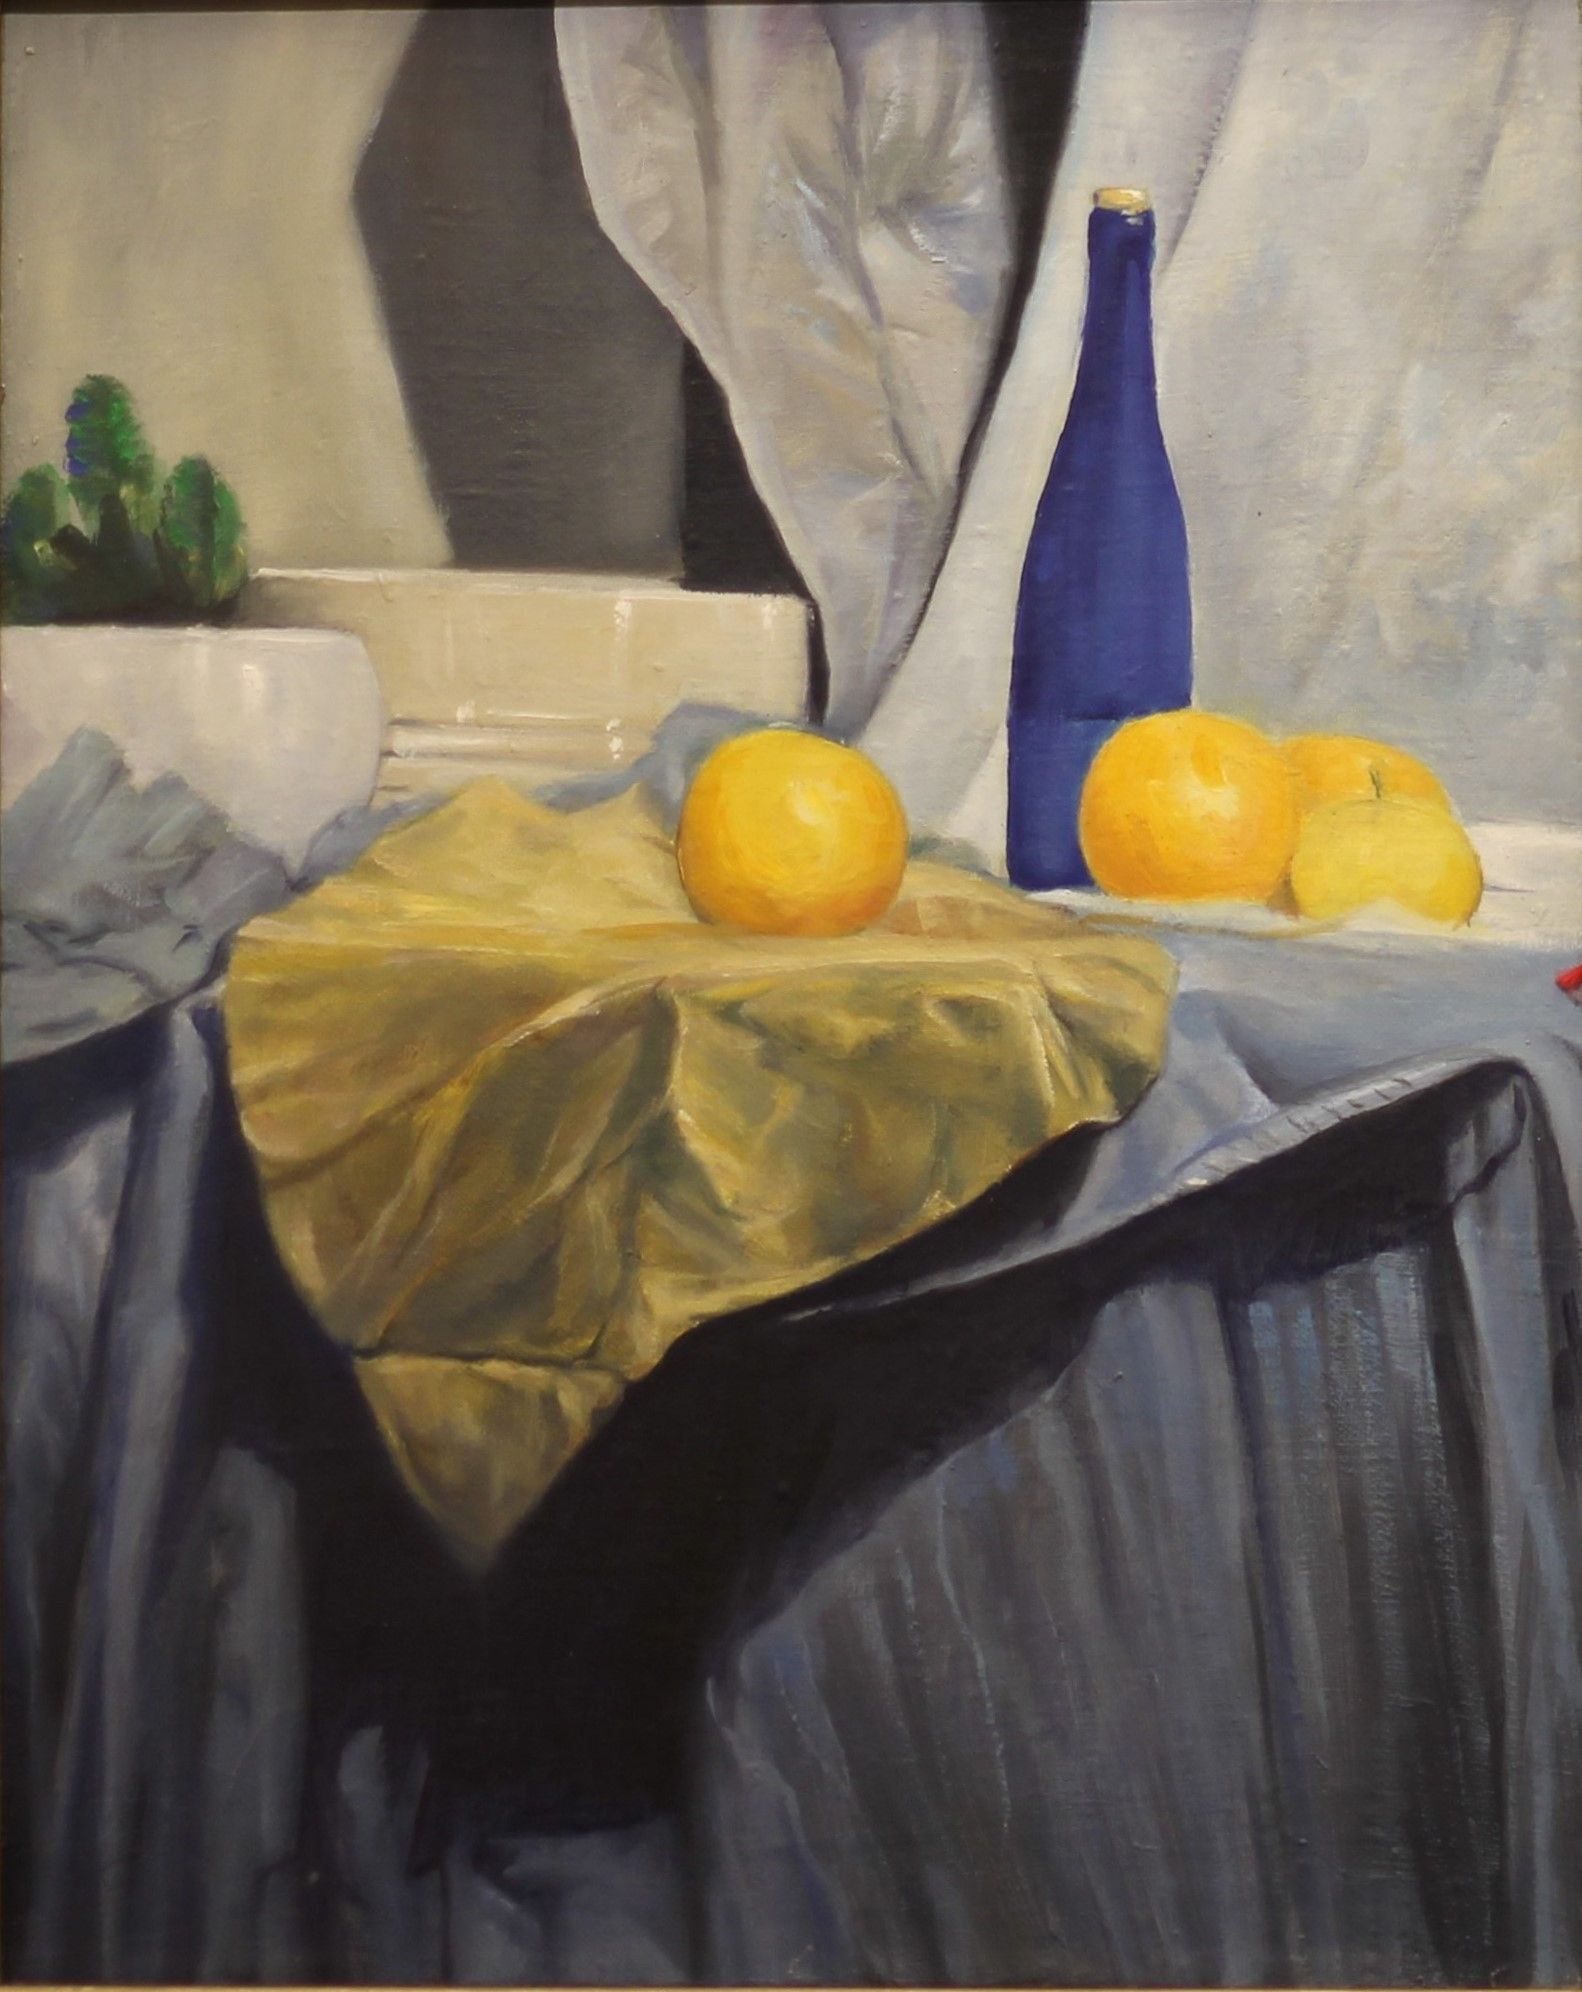 Na stole przykrytym szarą i żółtą tkaniną leżą cztery żółte owoce, wśród nich niebieska butelka